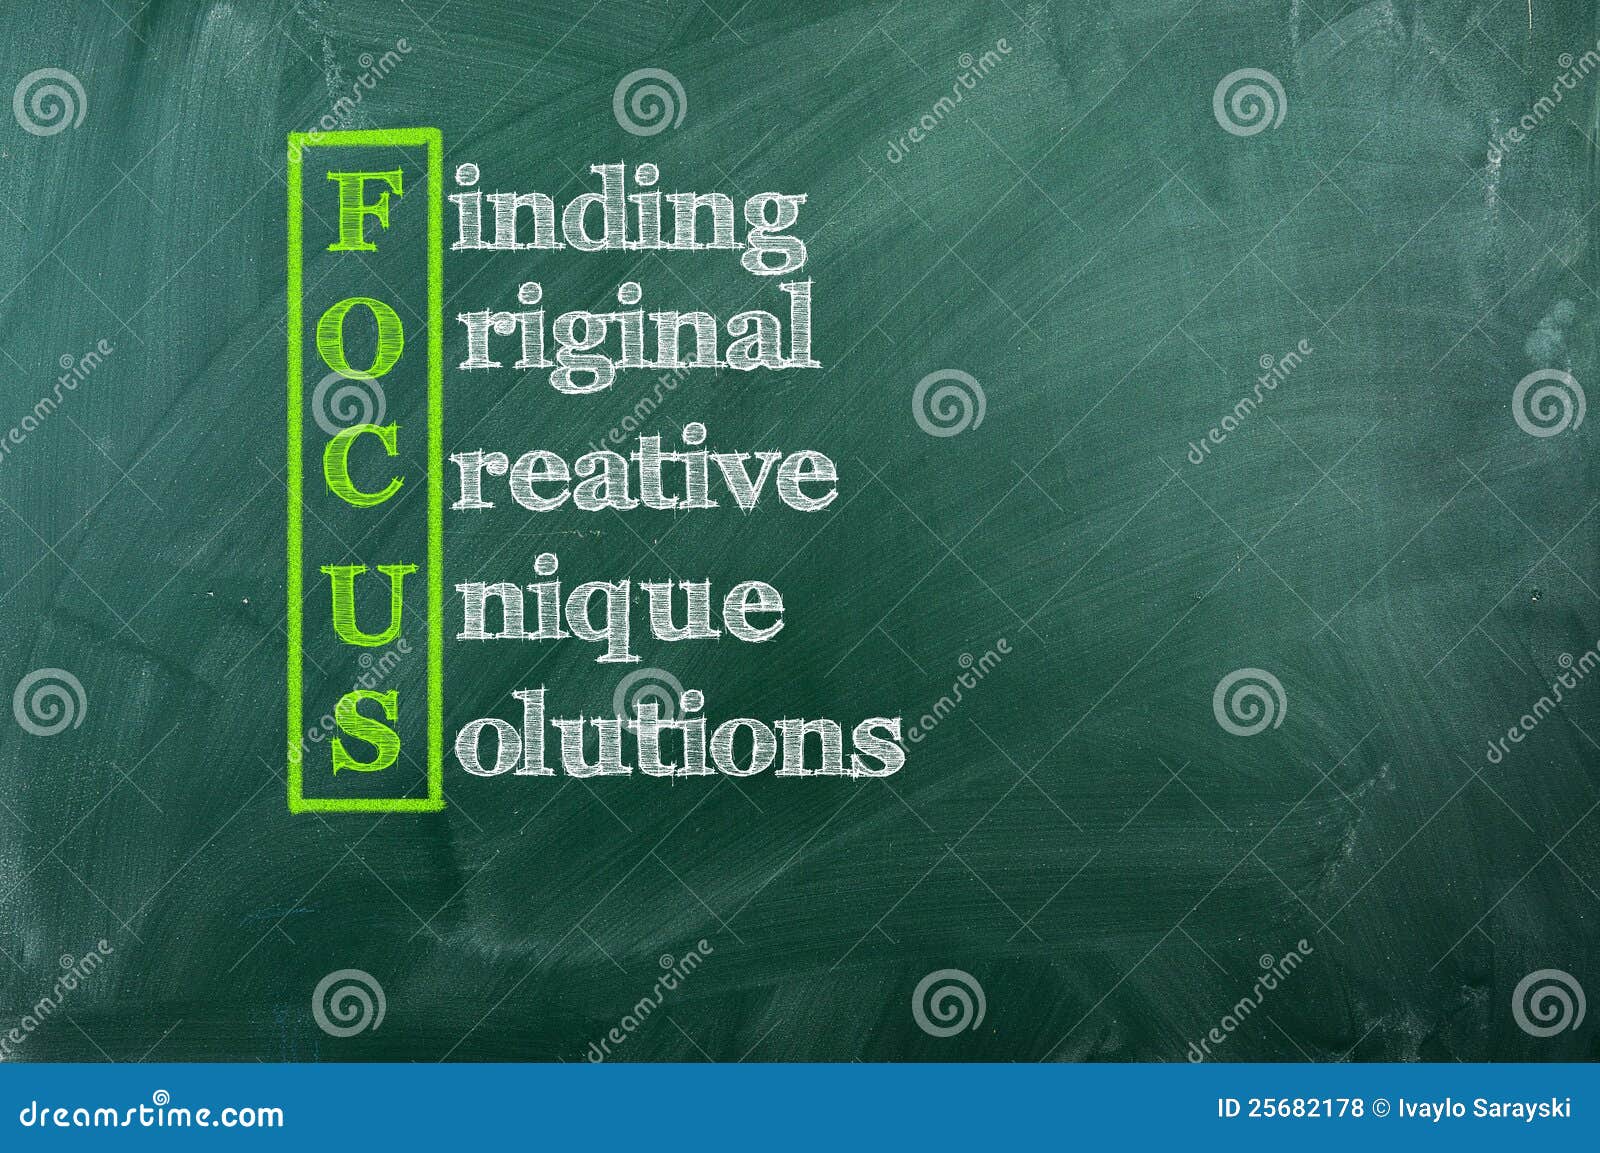 focus acronym